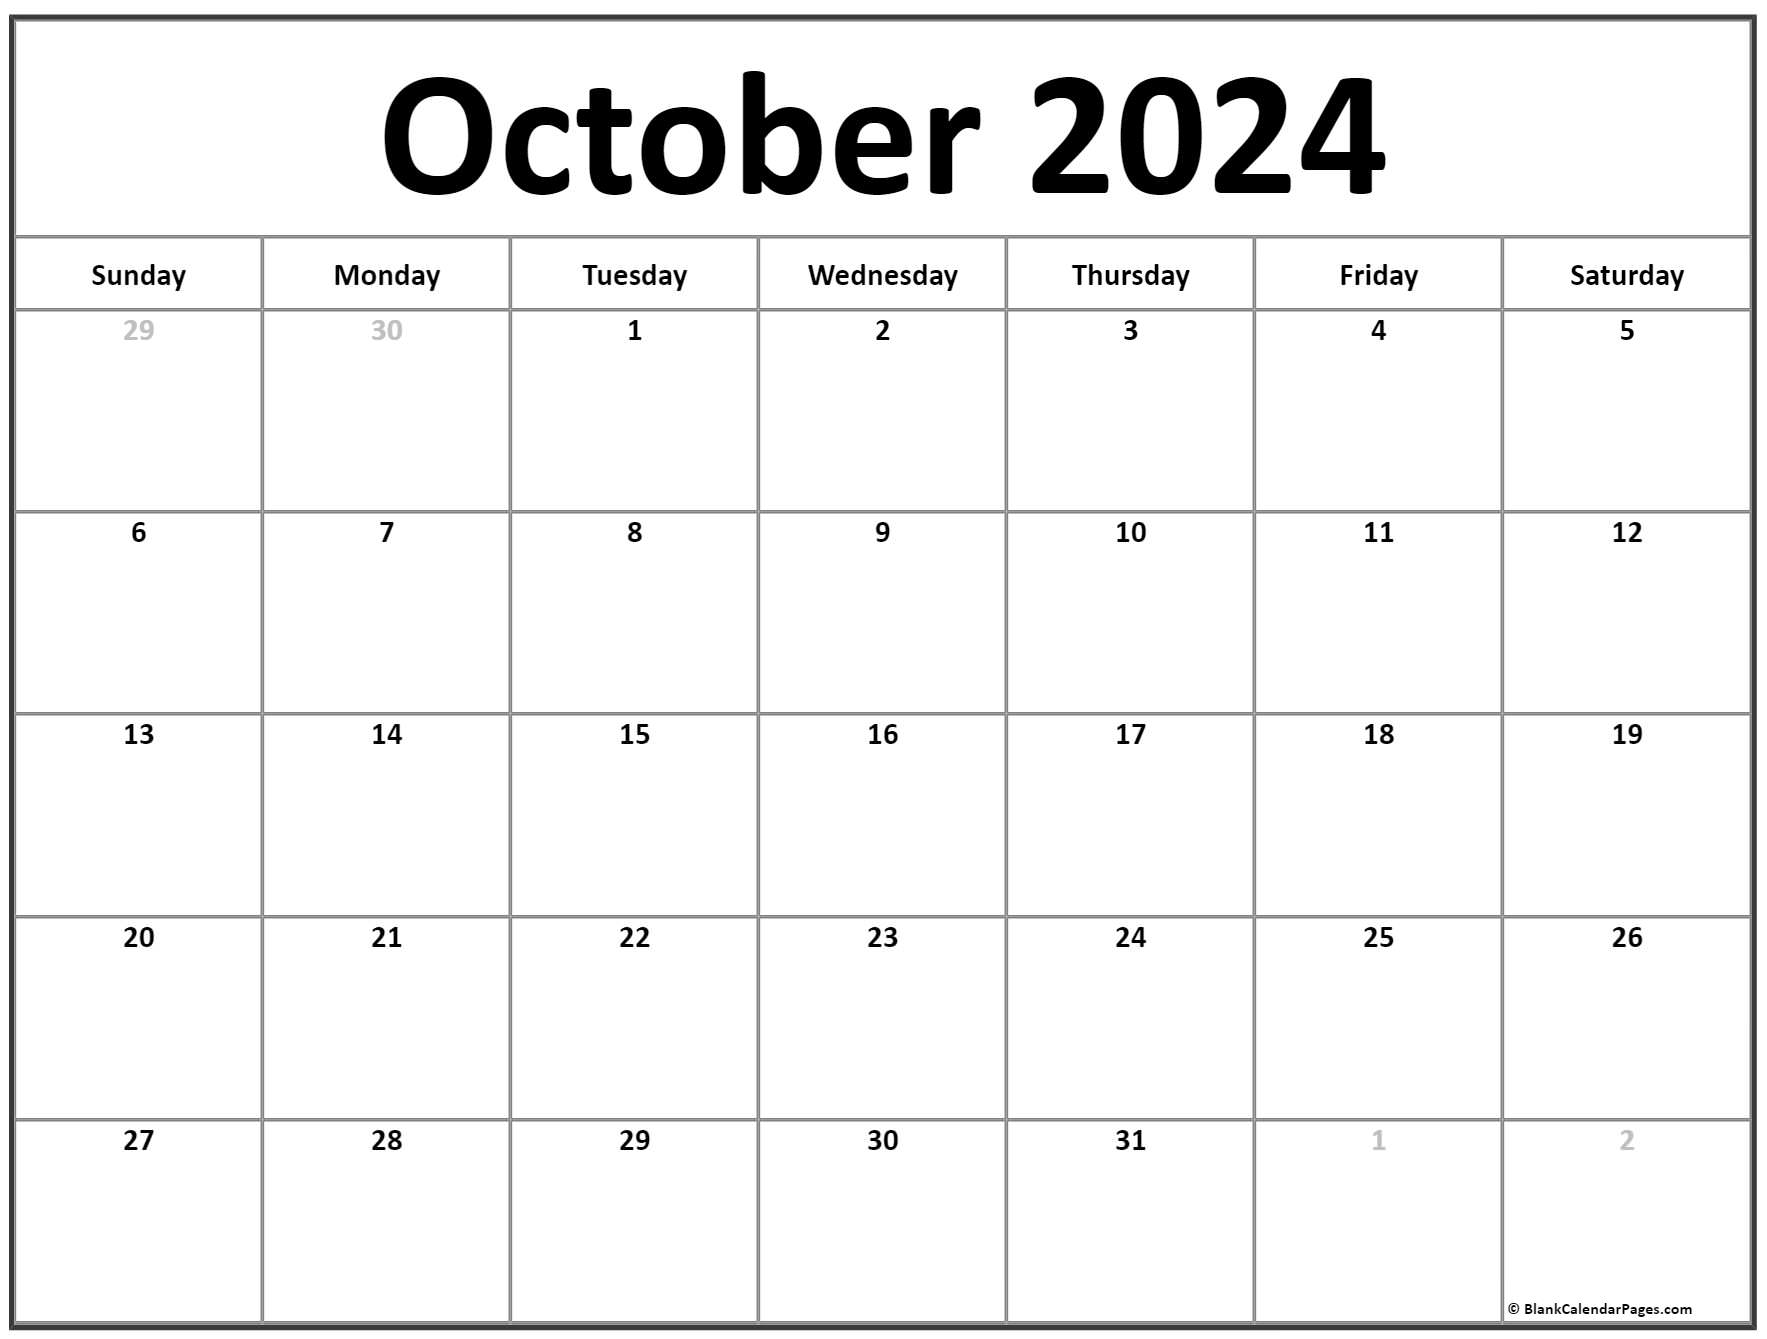 October 2021 calendar free printable calendar templates